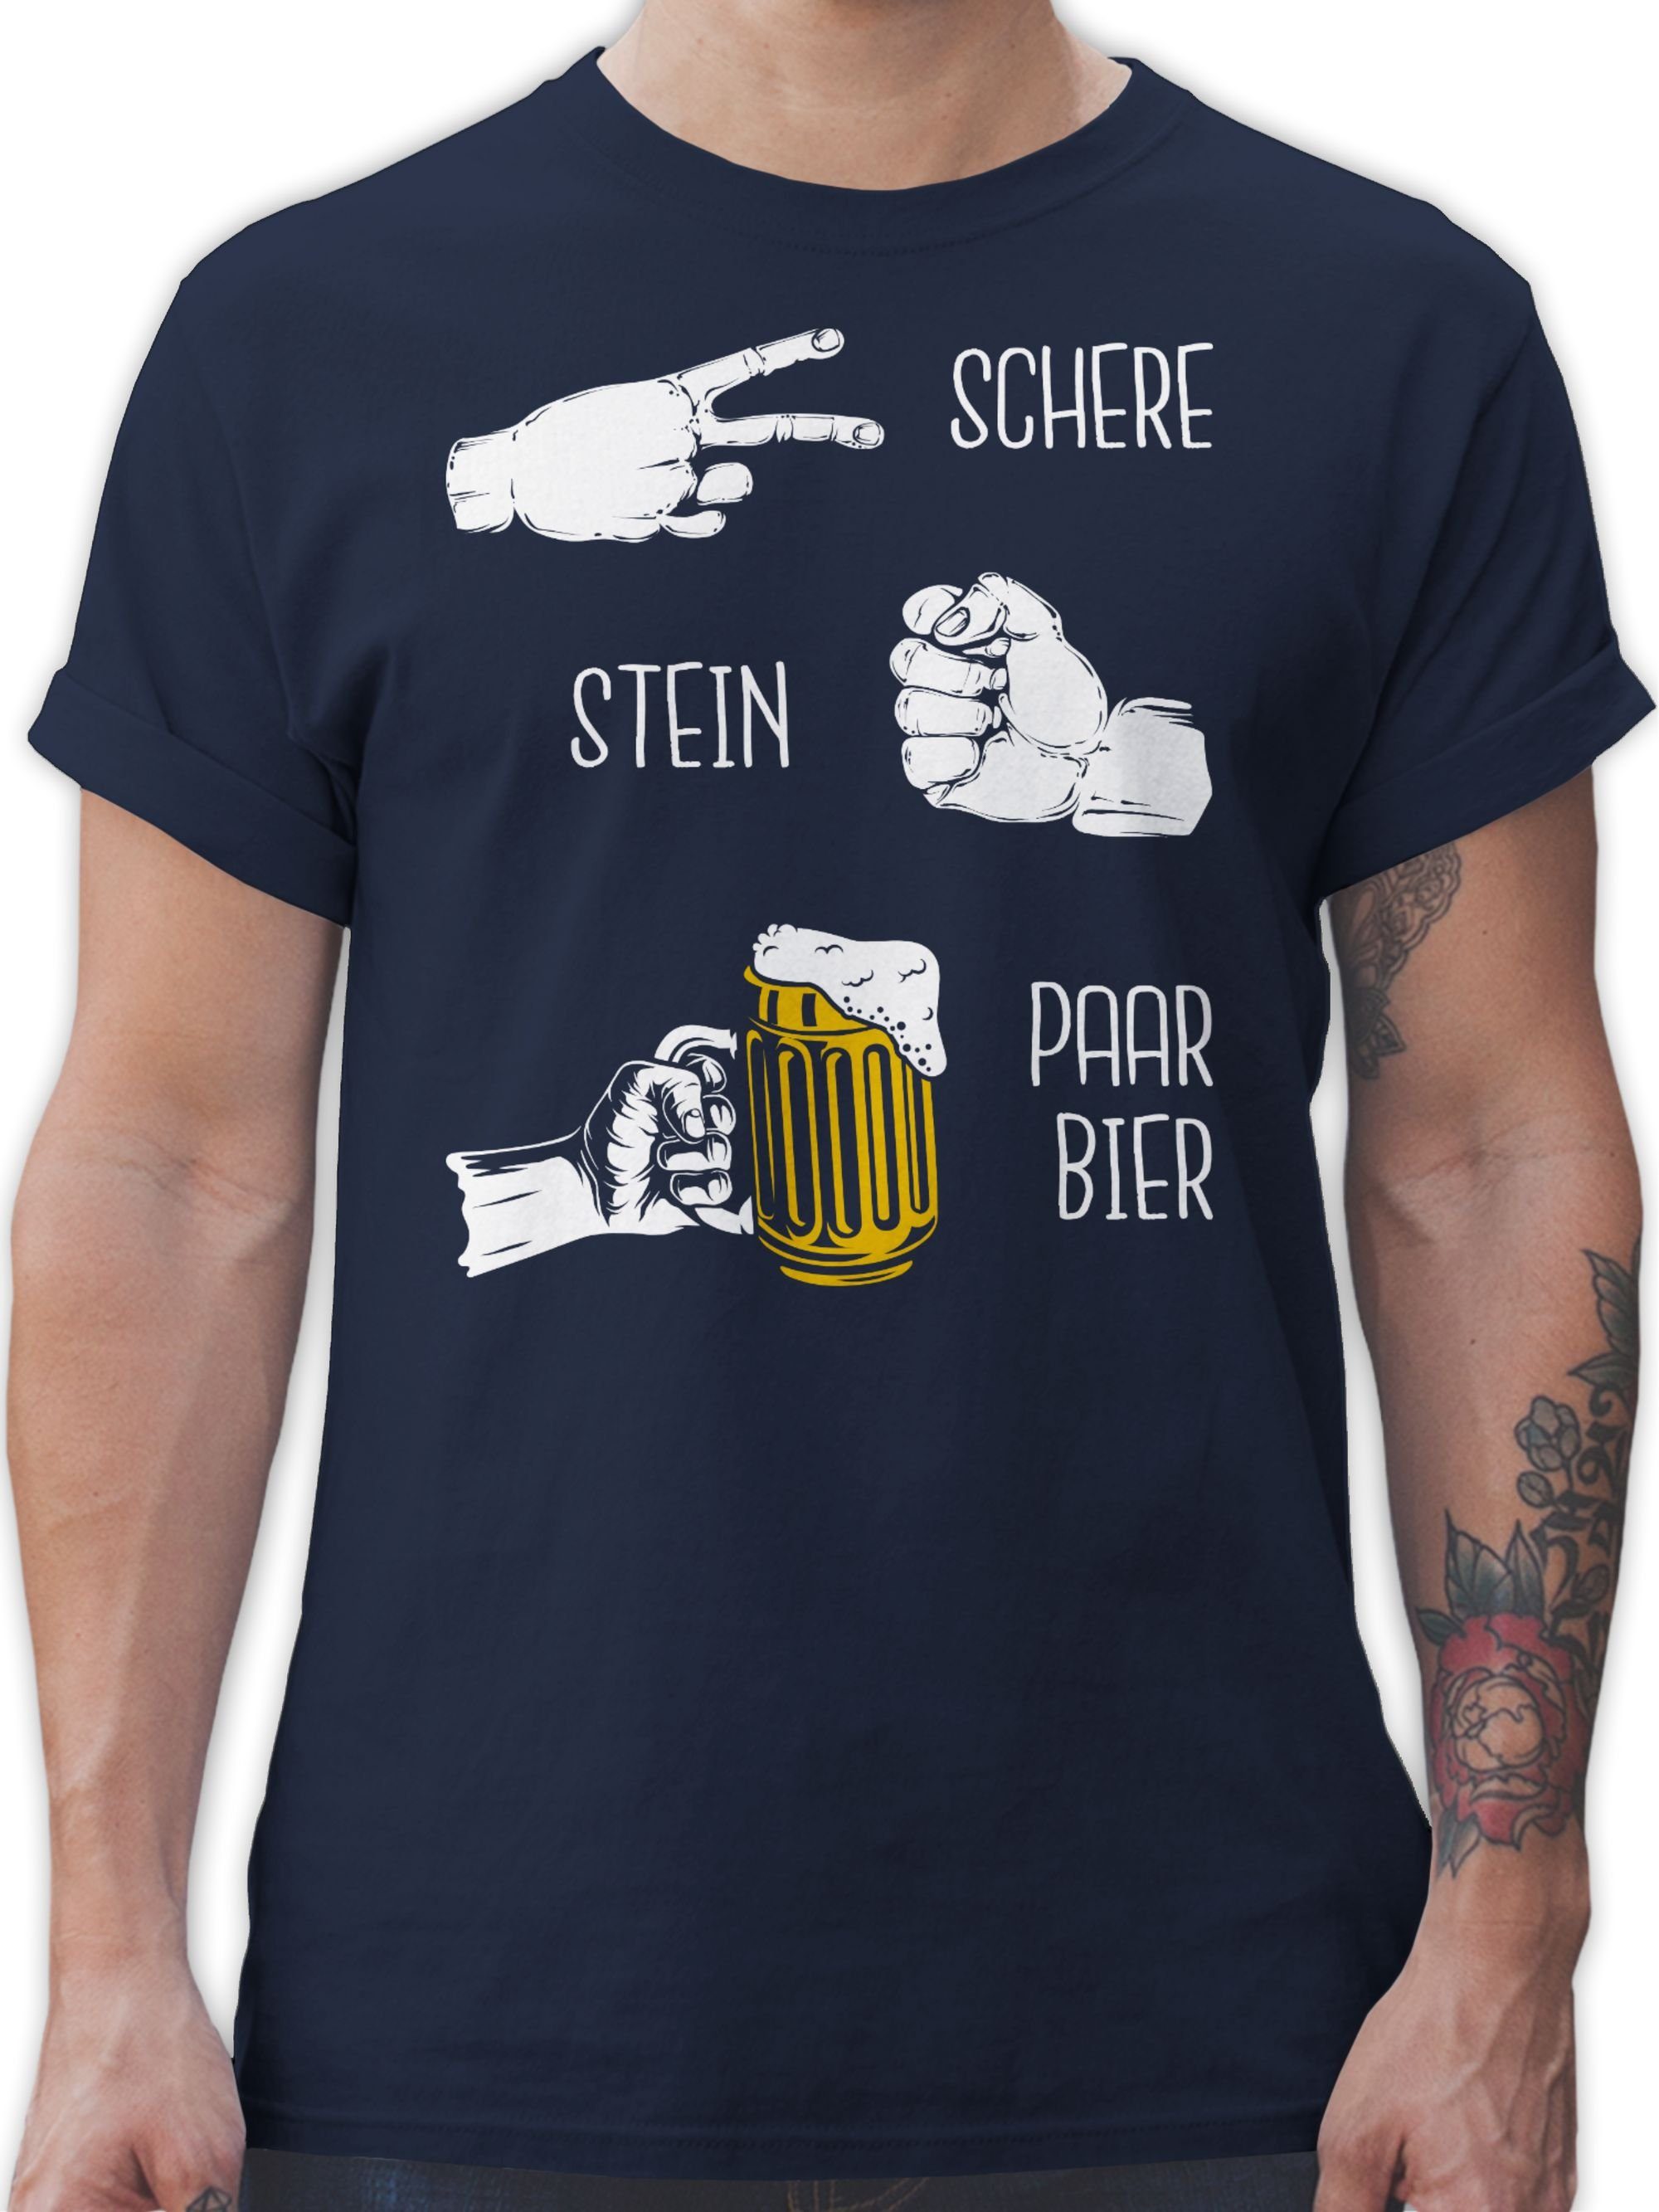 & Bier Lustig Stein Geschenk Blau Shirtracer Alkohol Hopfen - Herren T-Shirt Herrentag - Schere Party - Navy 03 Biergeschenke